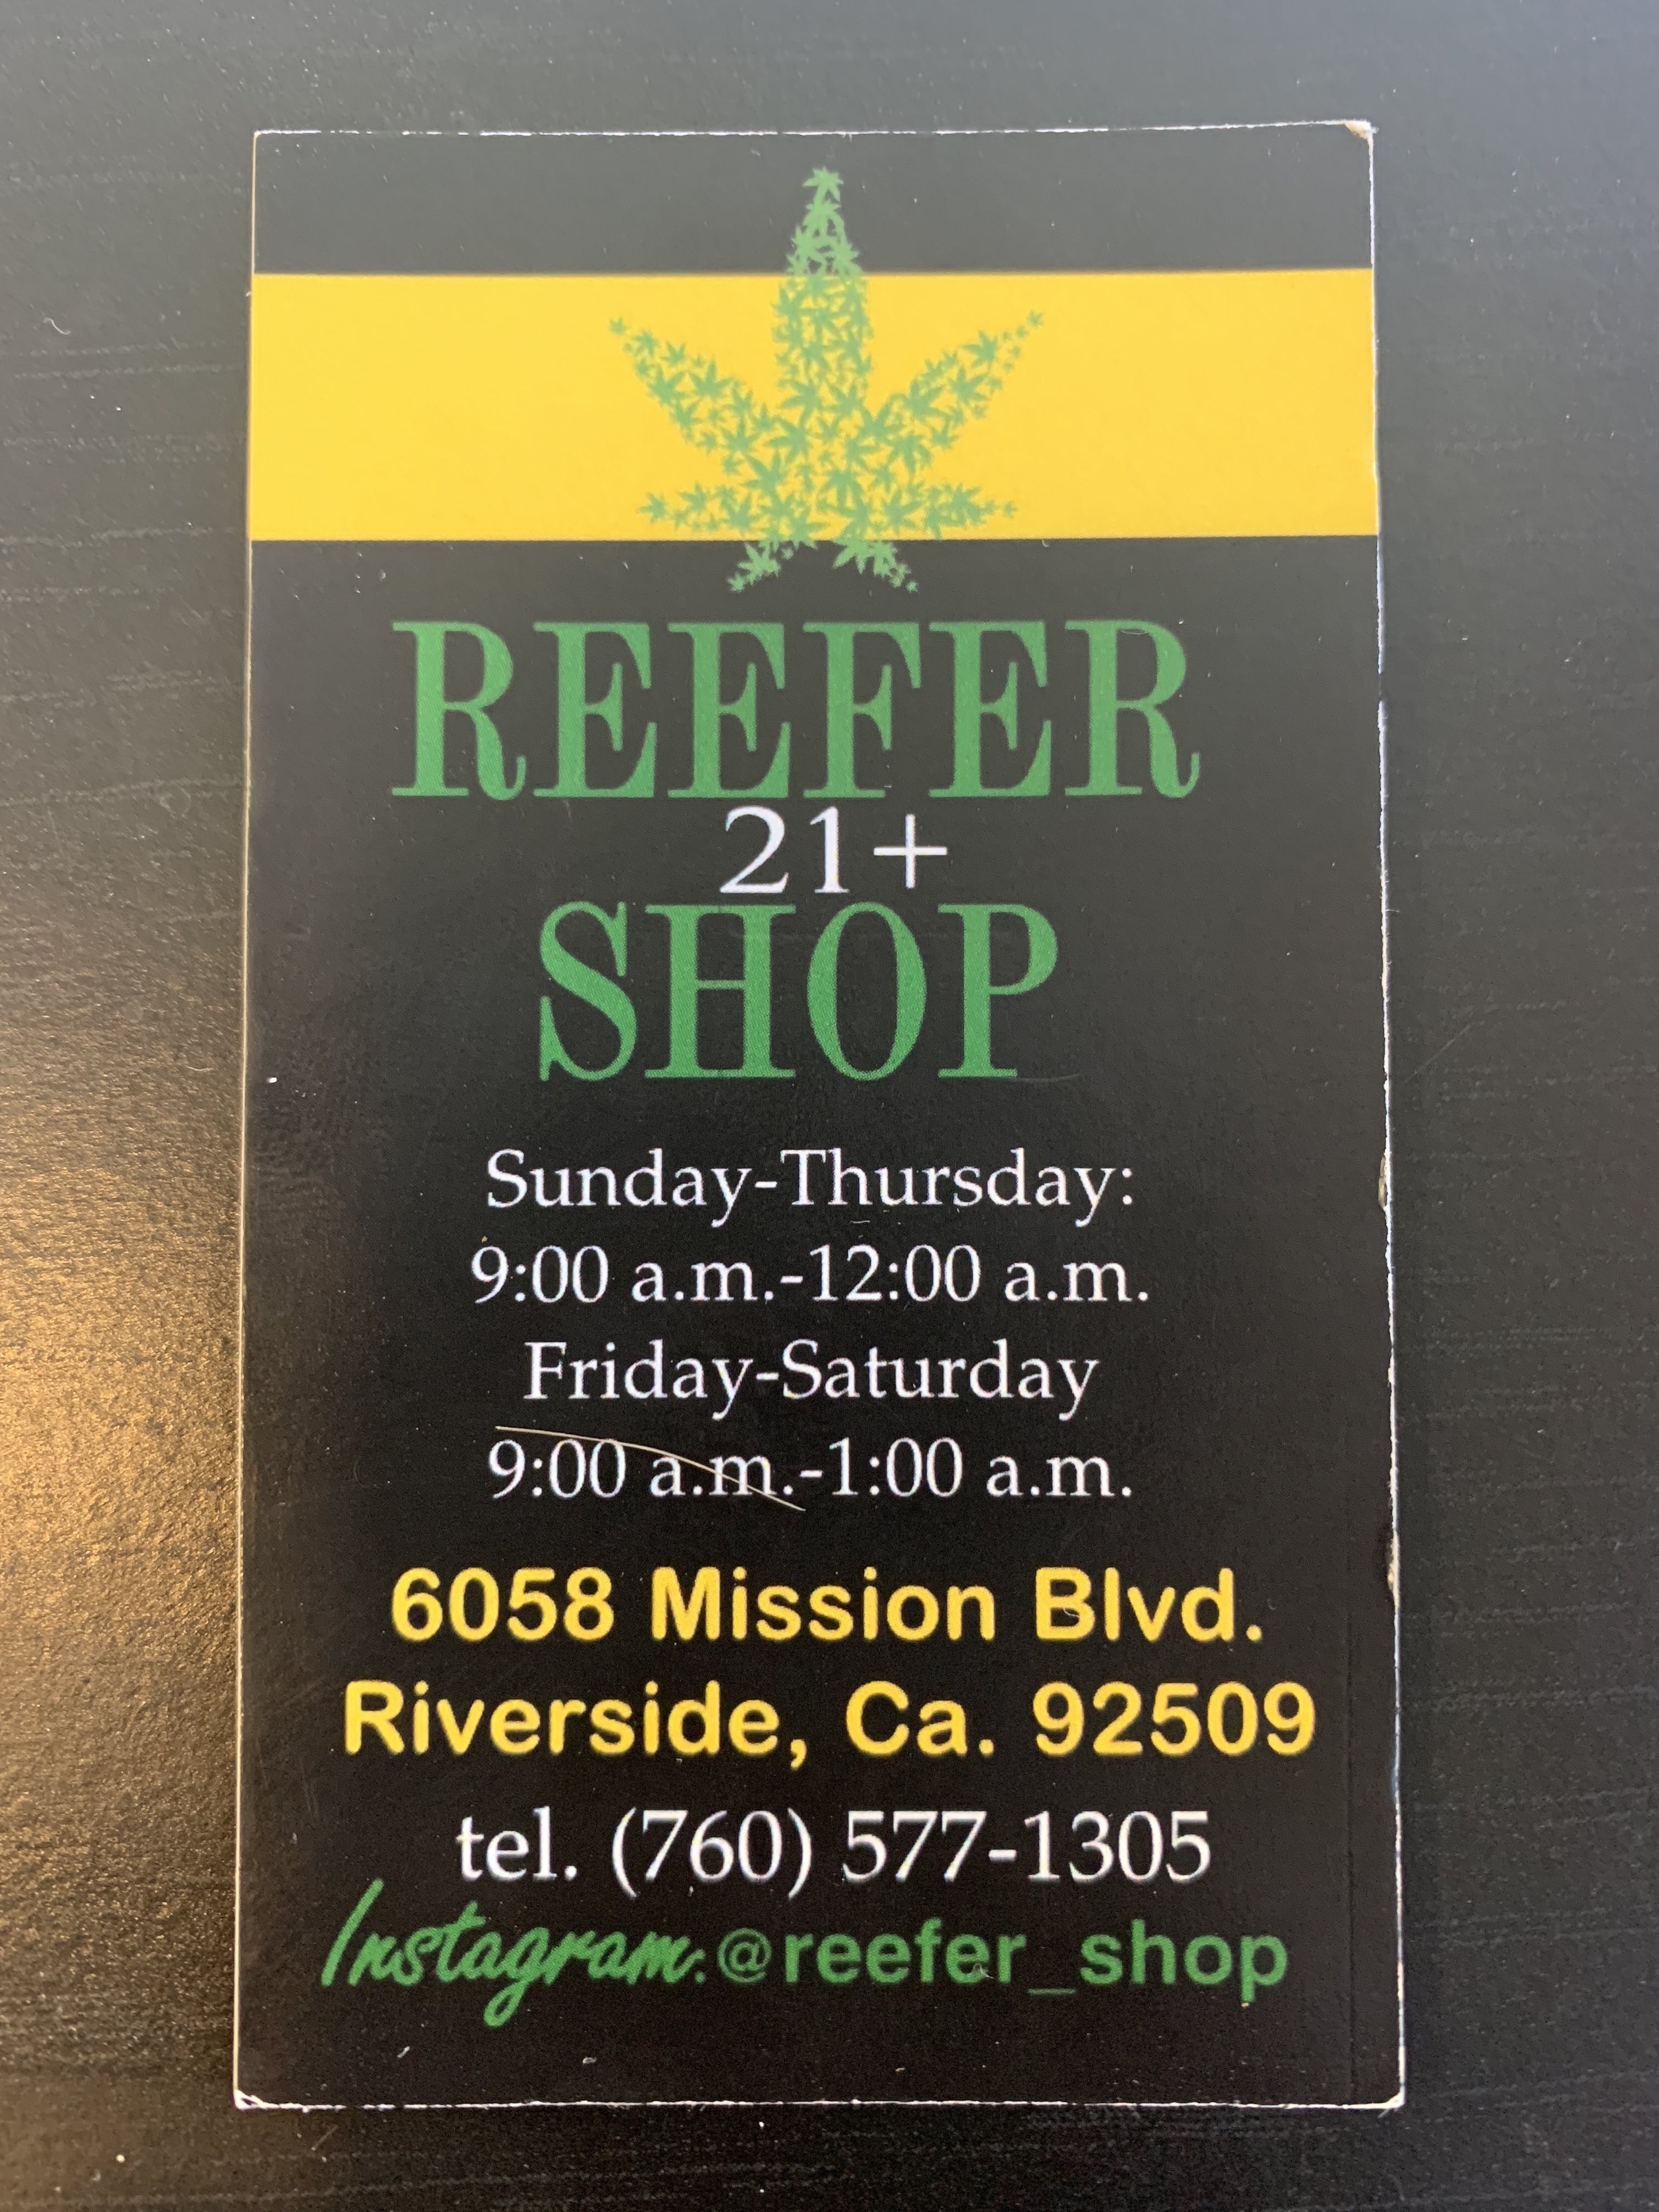 The Reefer Shop - Medical Marijuana Doctors - Cannabizme.com